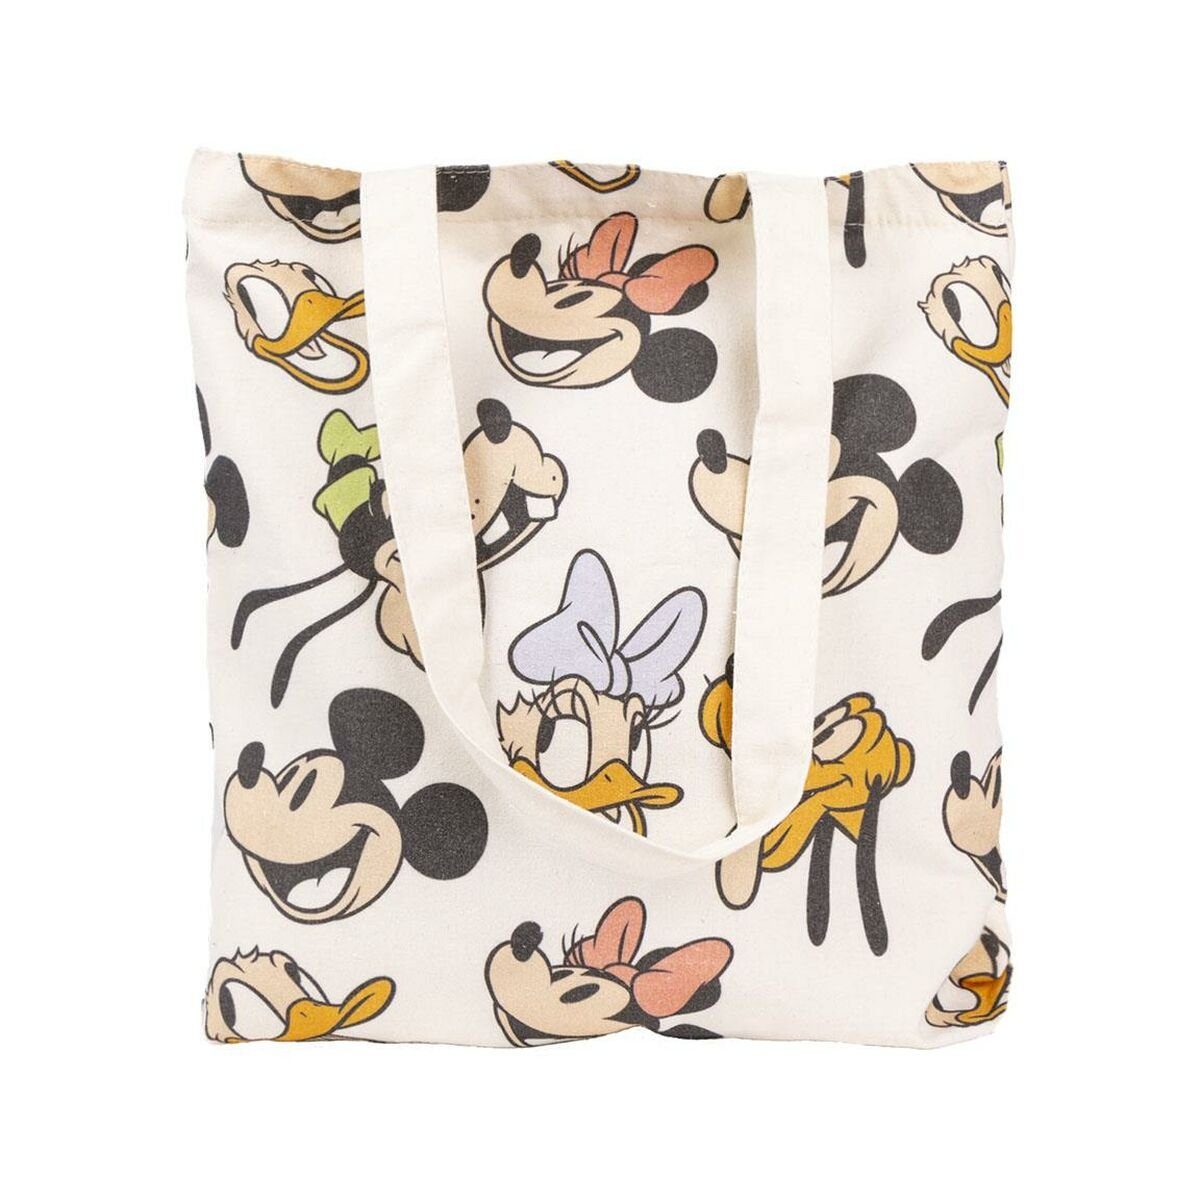 Einkaufstasche x Minnie x Minnie Handtasche cm Disney Bunt 39 Mouse 0,4 Mouse 36